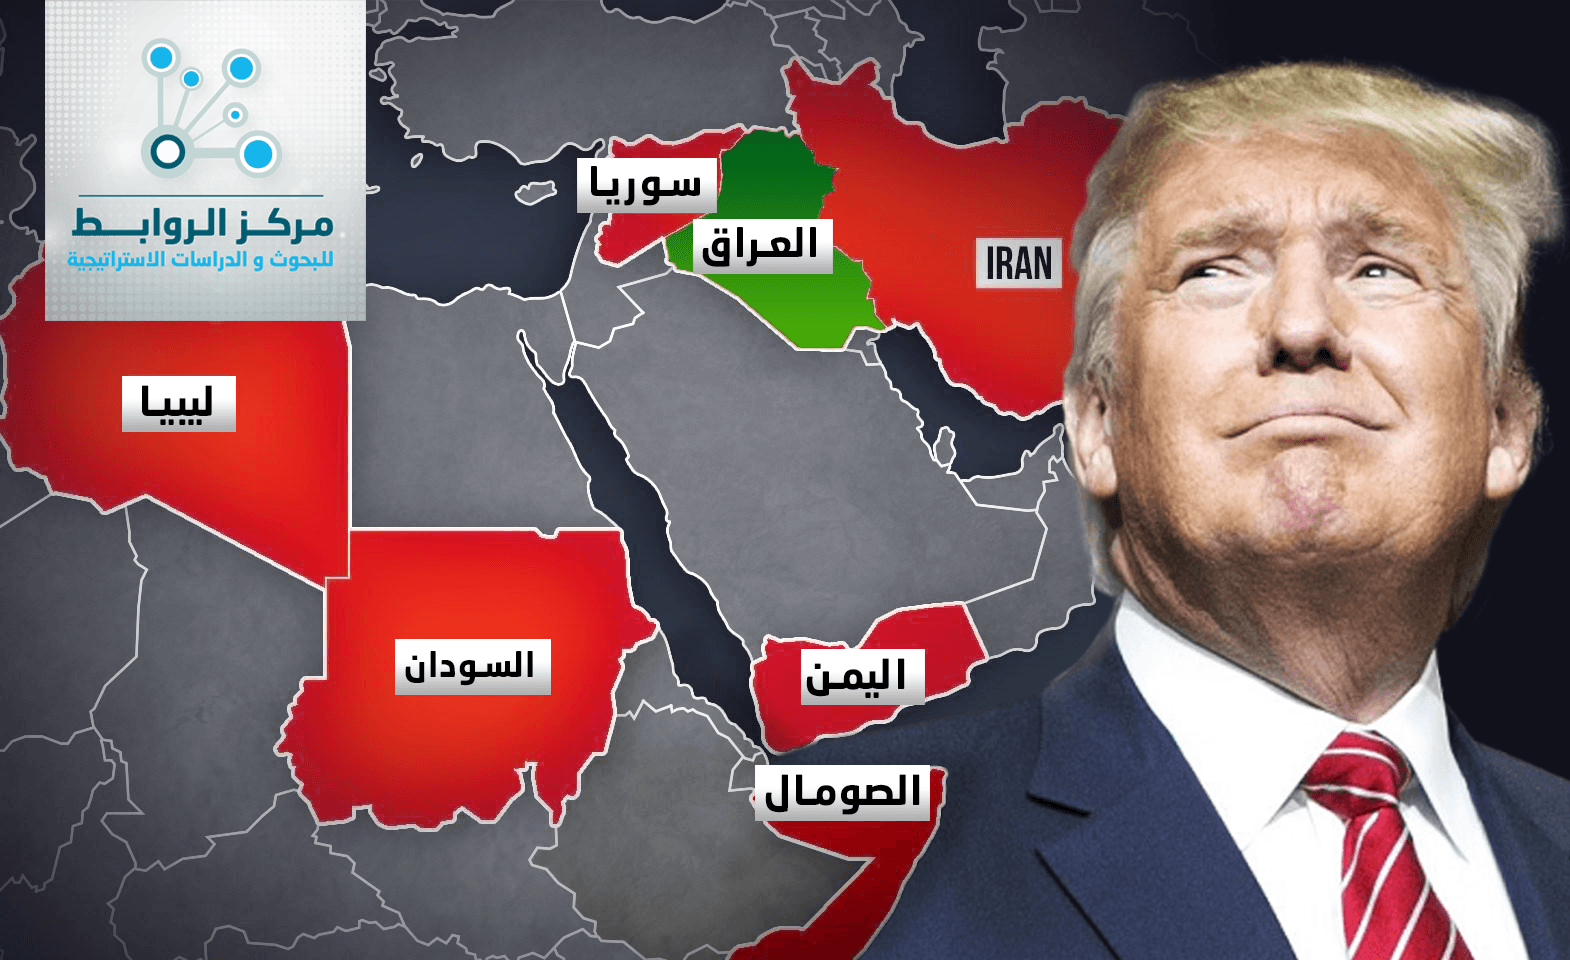 عن دوافع إعفاء العراقيين من حظر دخول الولايات المتحدة الأمريكية